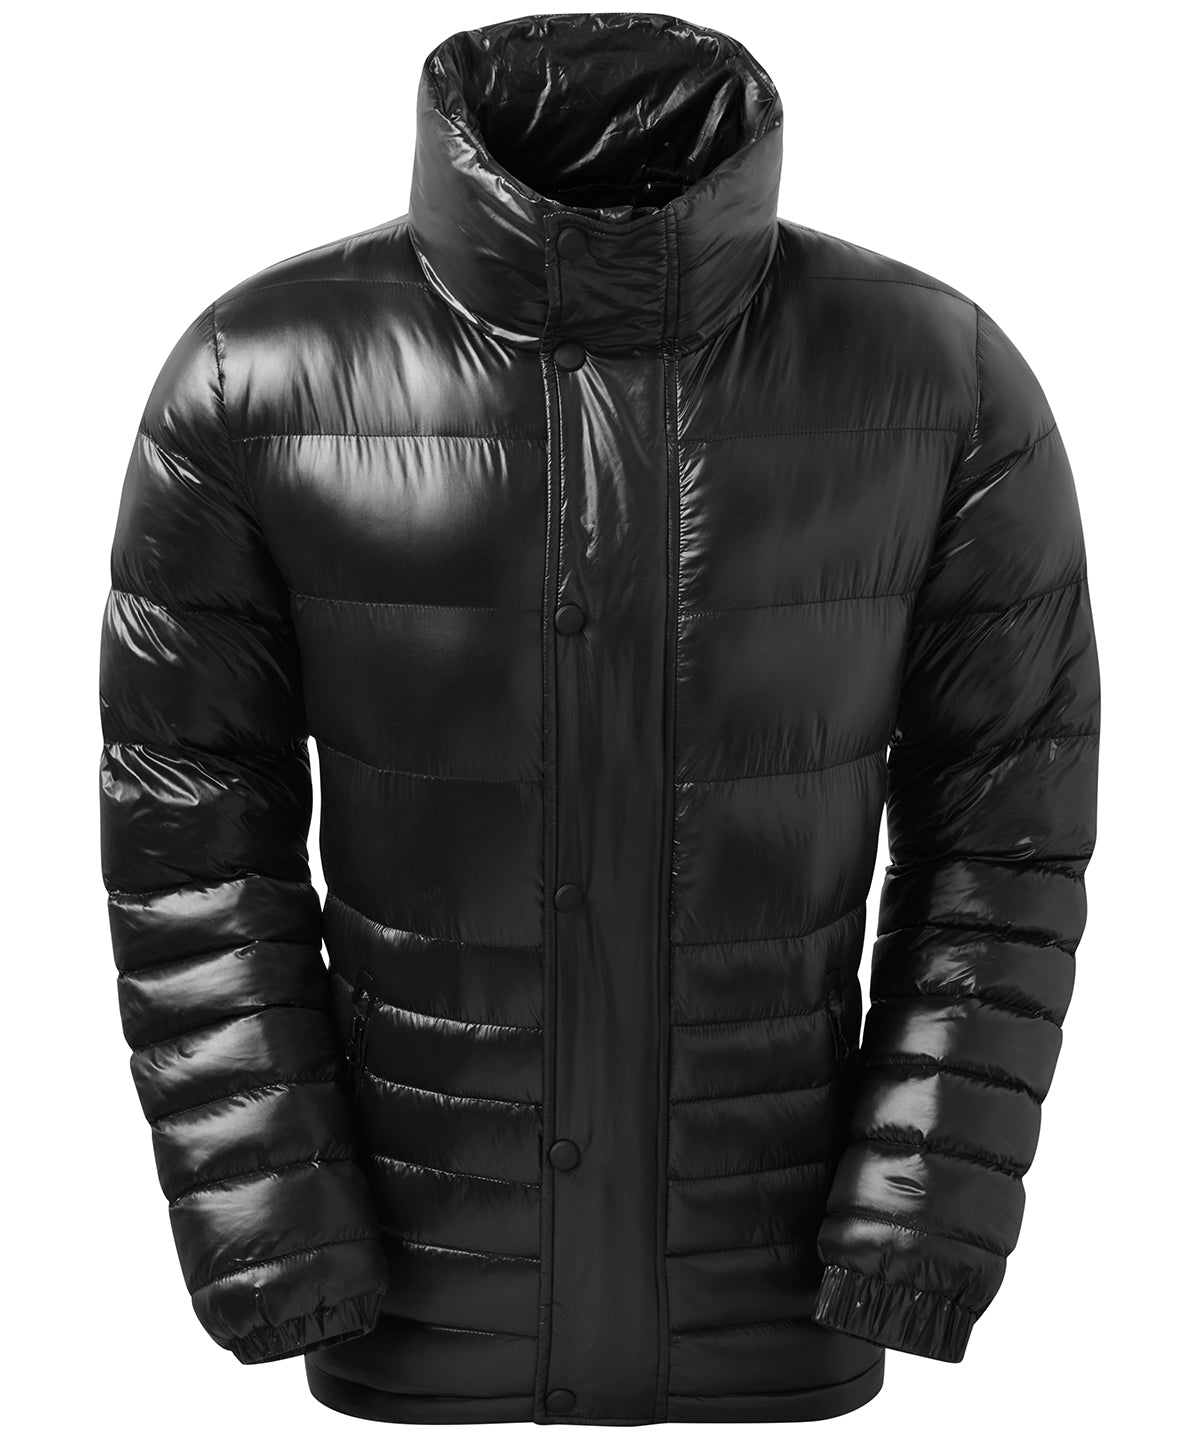 Personalised Jackets - Black 2786 Sloper padded jacket